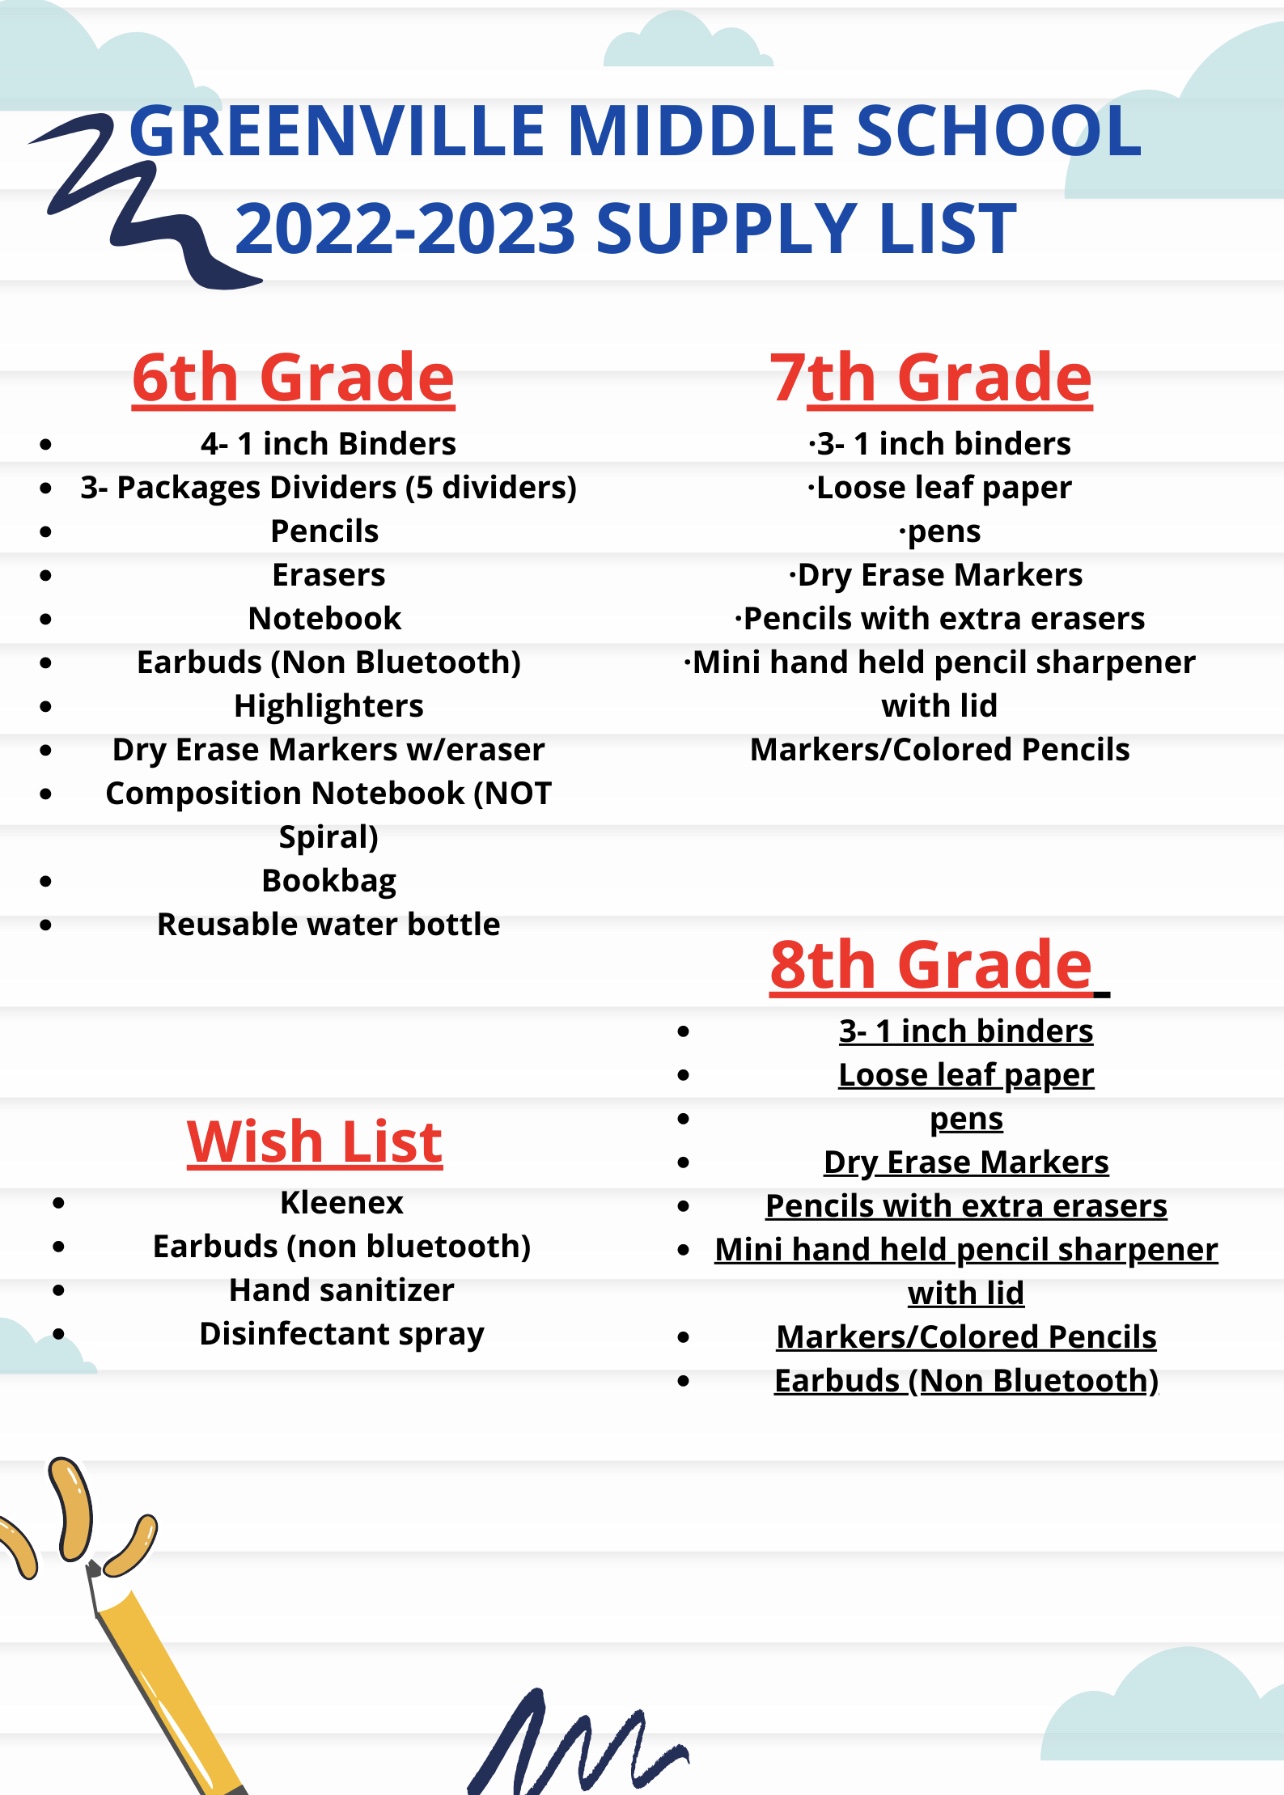 2022/23 School Supply List Greenville Middle School